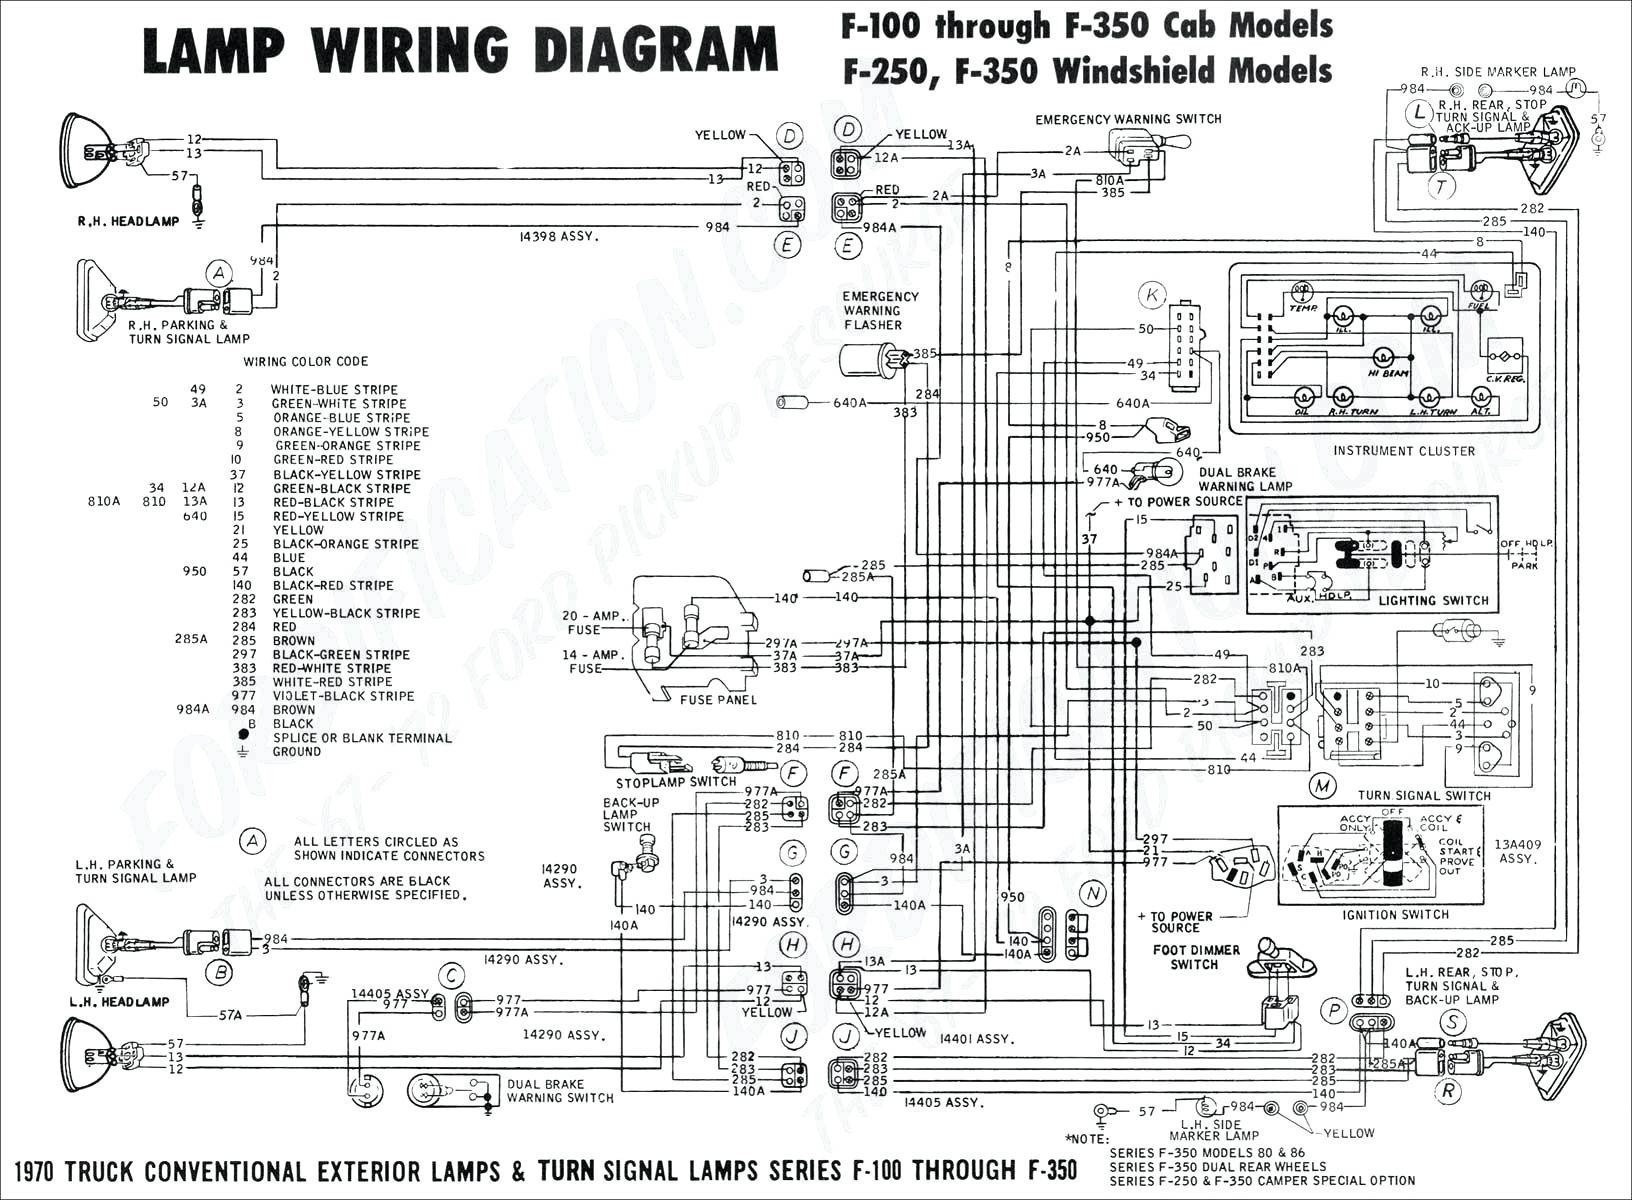 2000 Jetta Engine Diagram 2002 Volkswagen Jetta Engine Diagram Wiring Diagram Used Of 2000 Jetta Engine Diagram